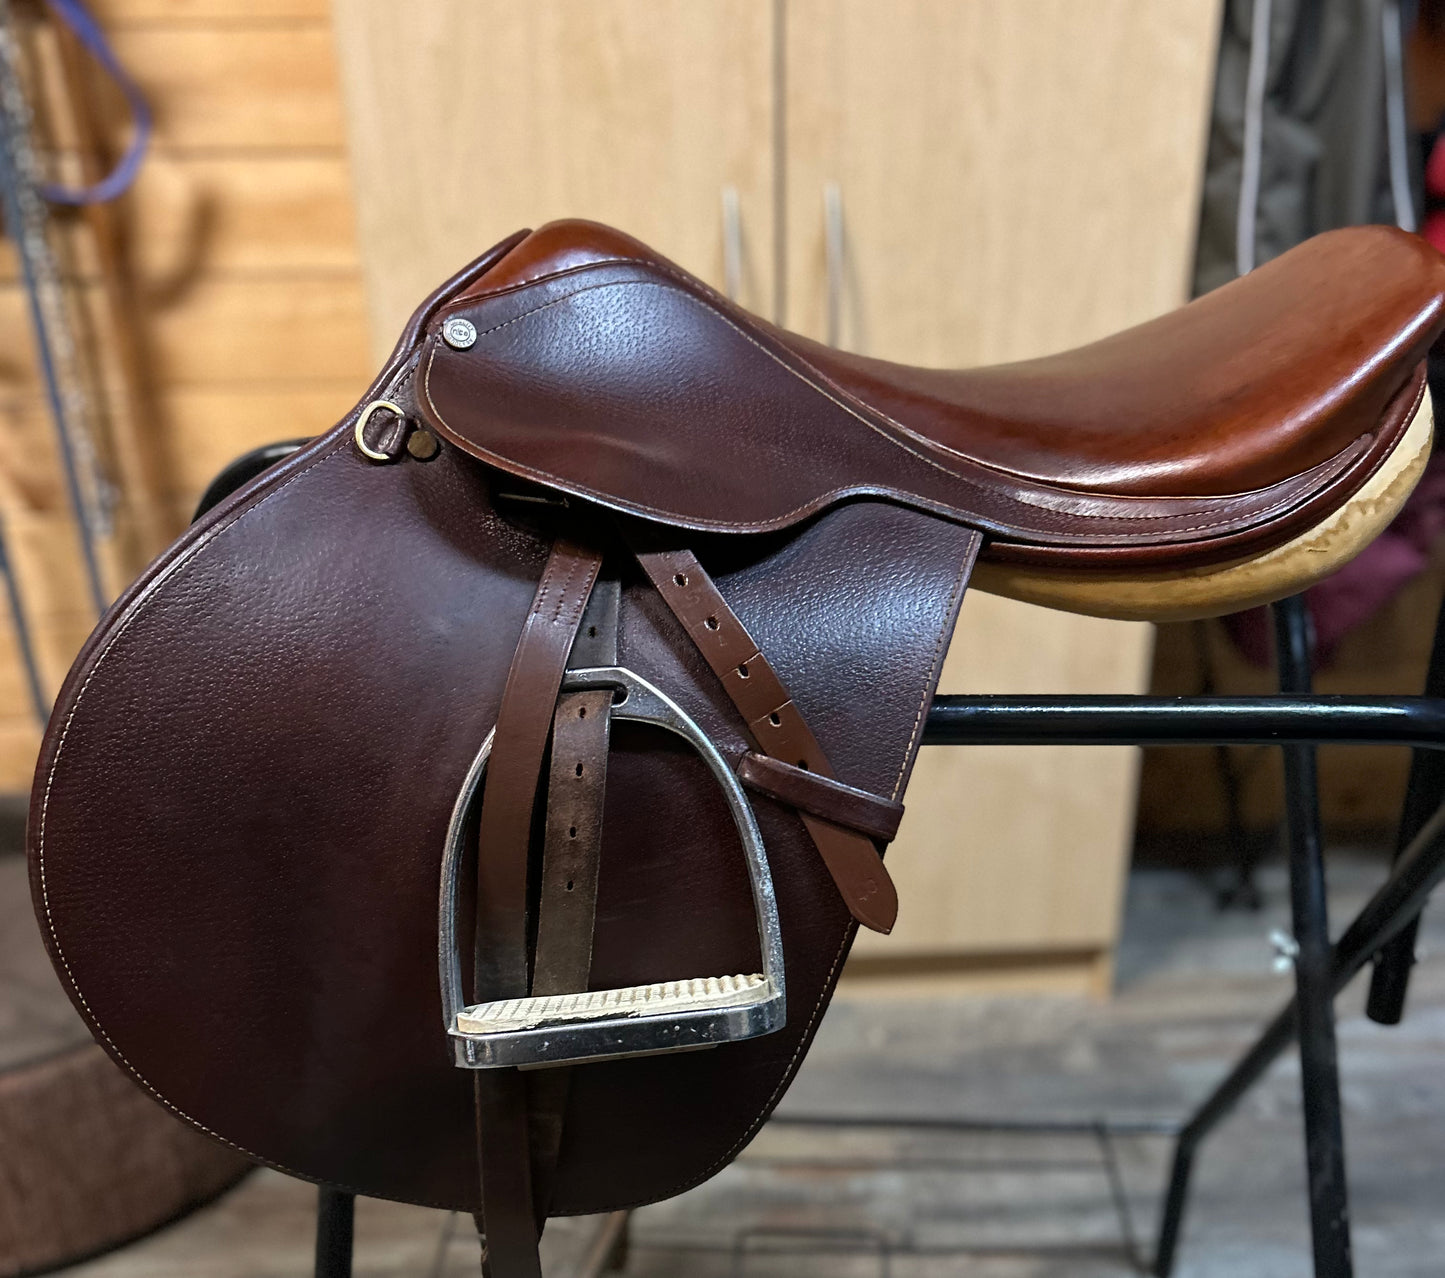 Quality Nice 17.5” close contact saddle